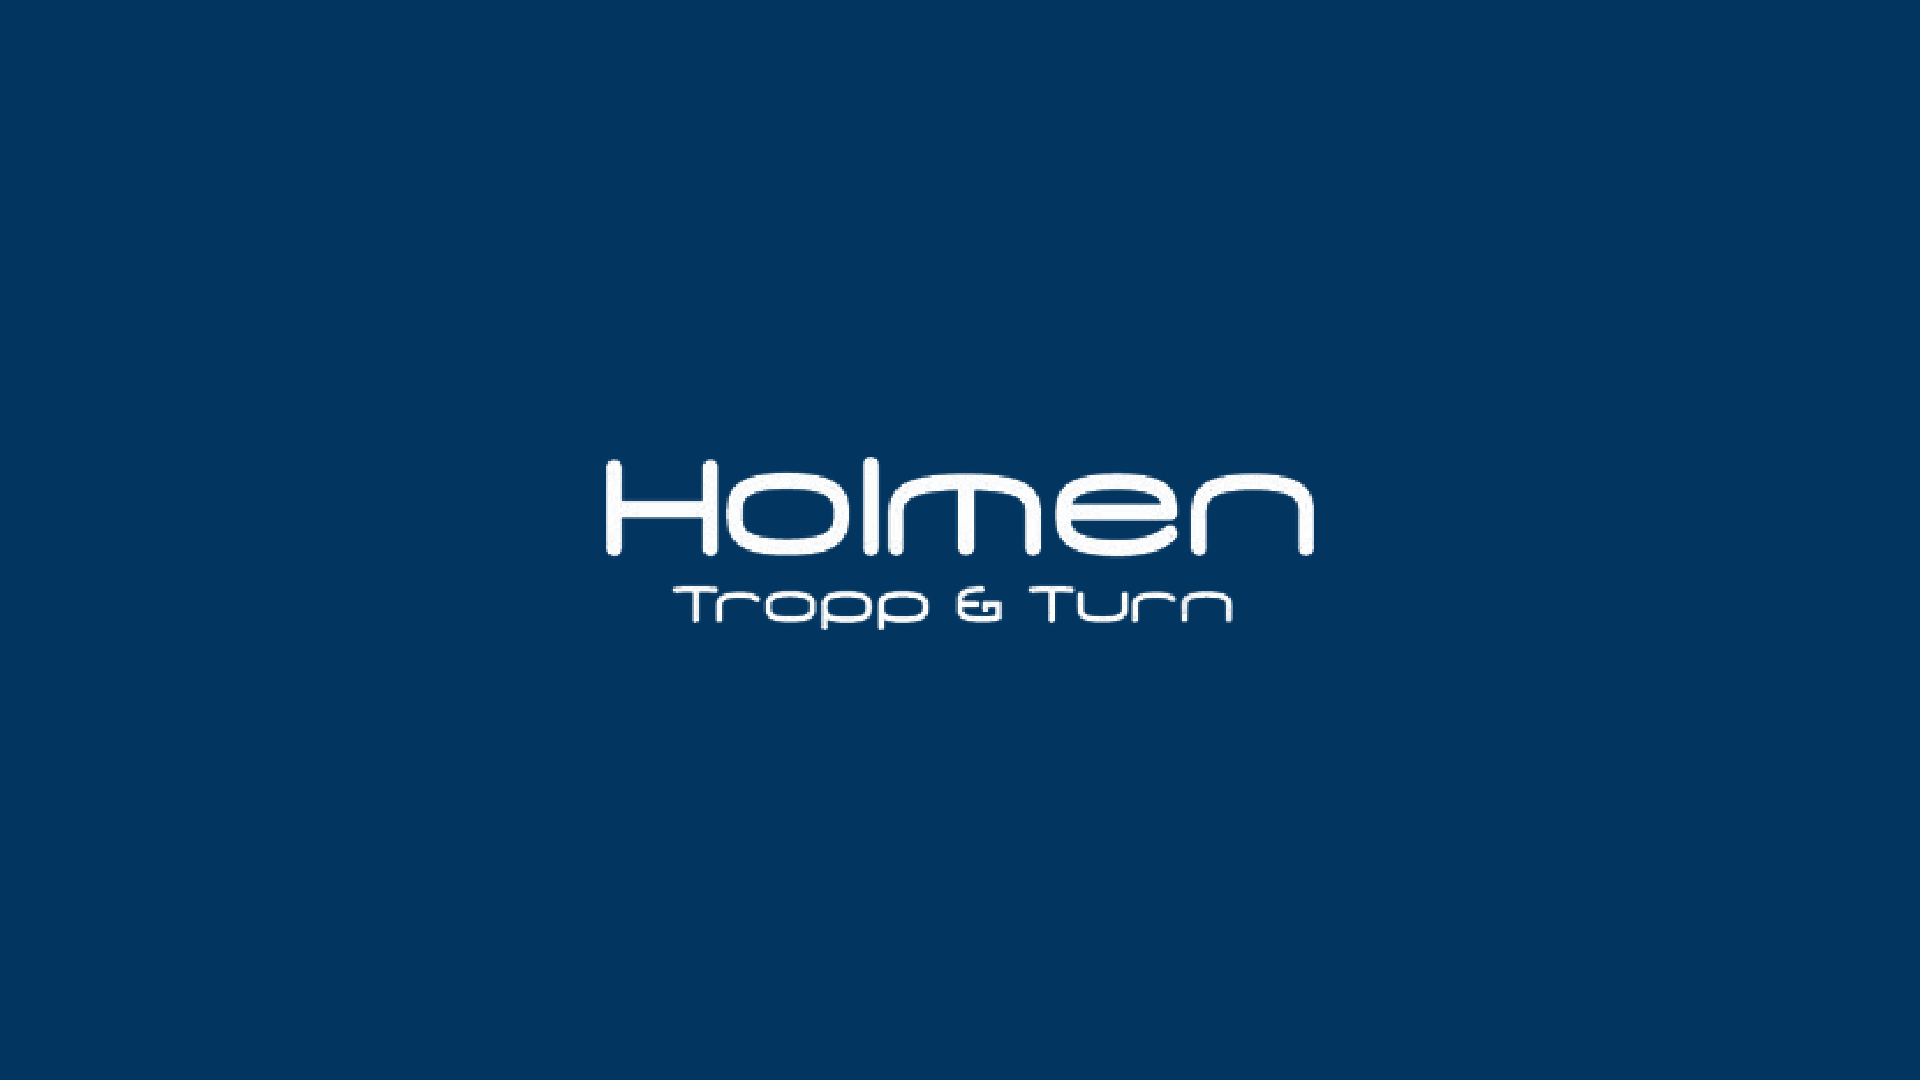 Holmen Tropp & Turn logo